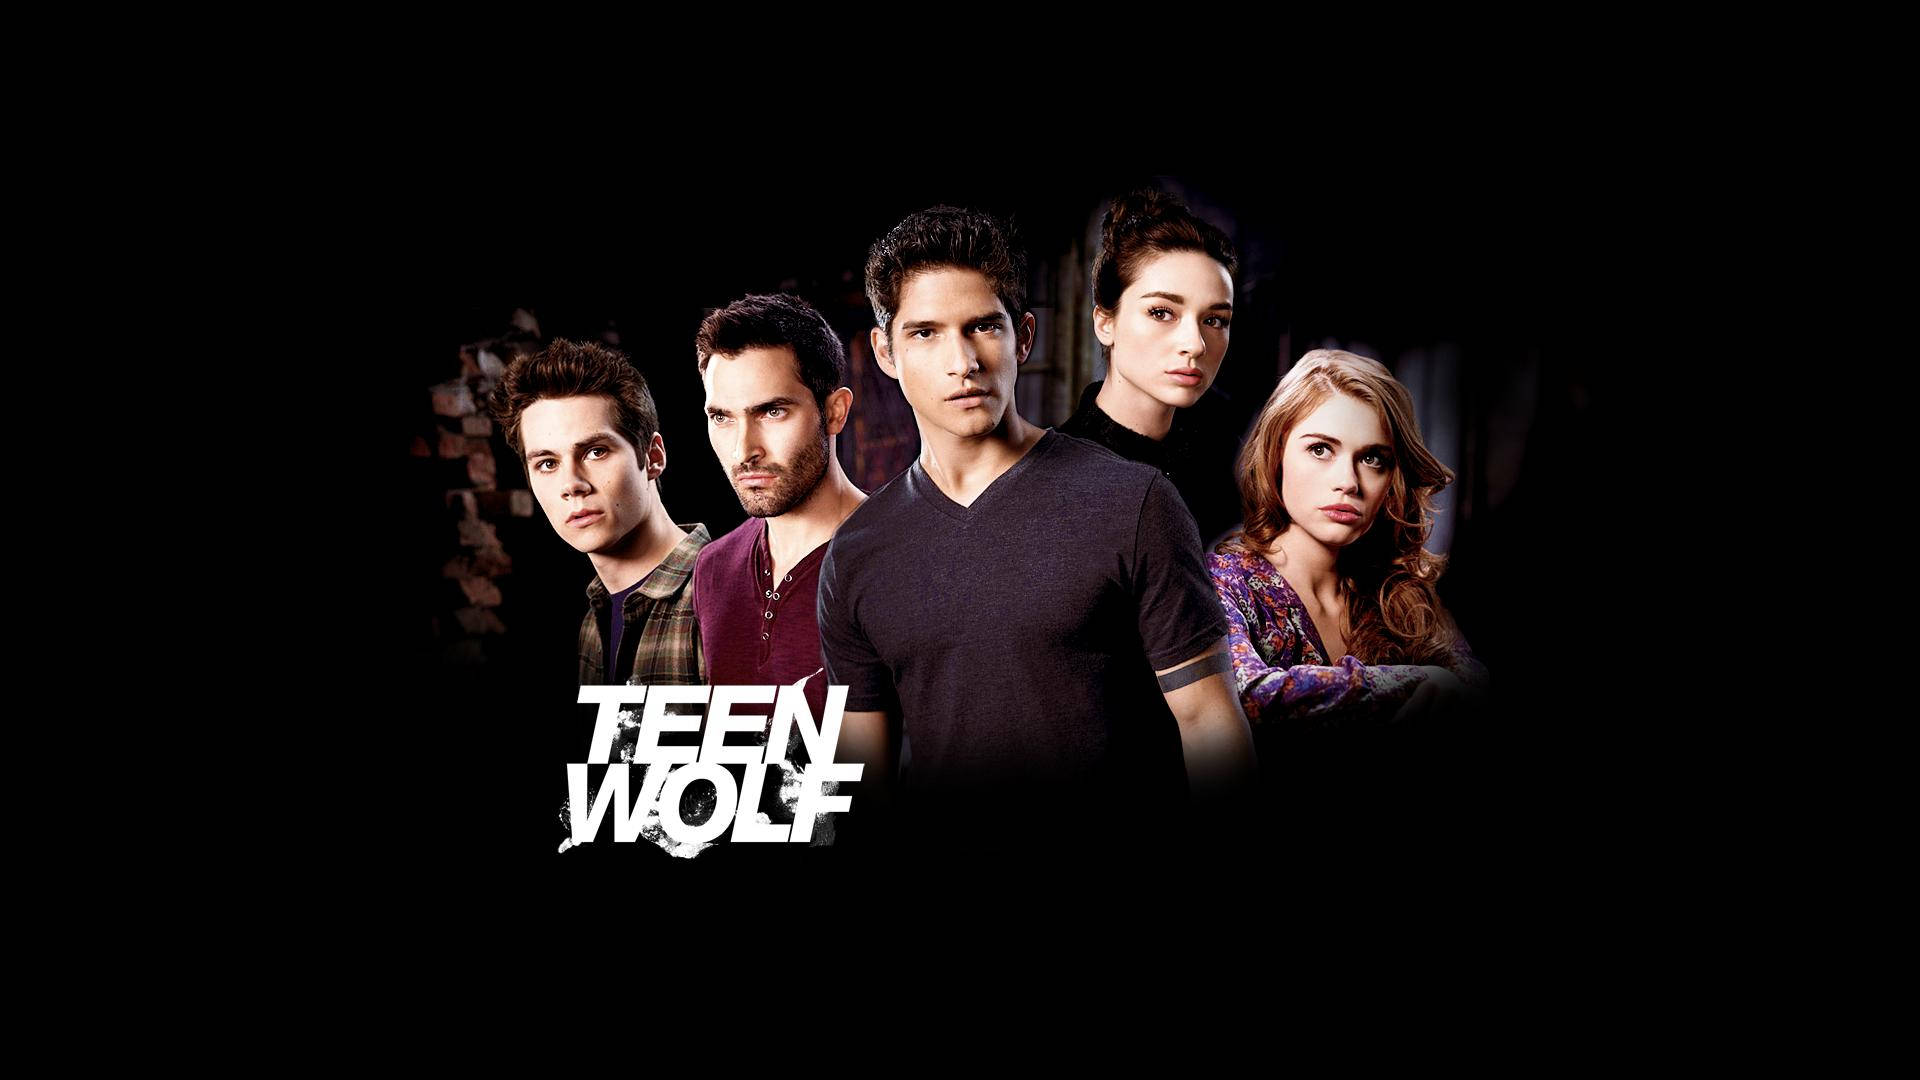 Teen Wolf Actor Tyler Posey